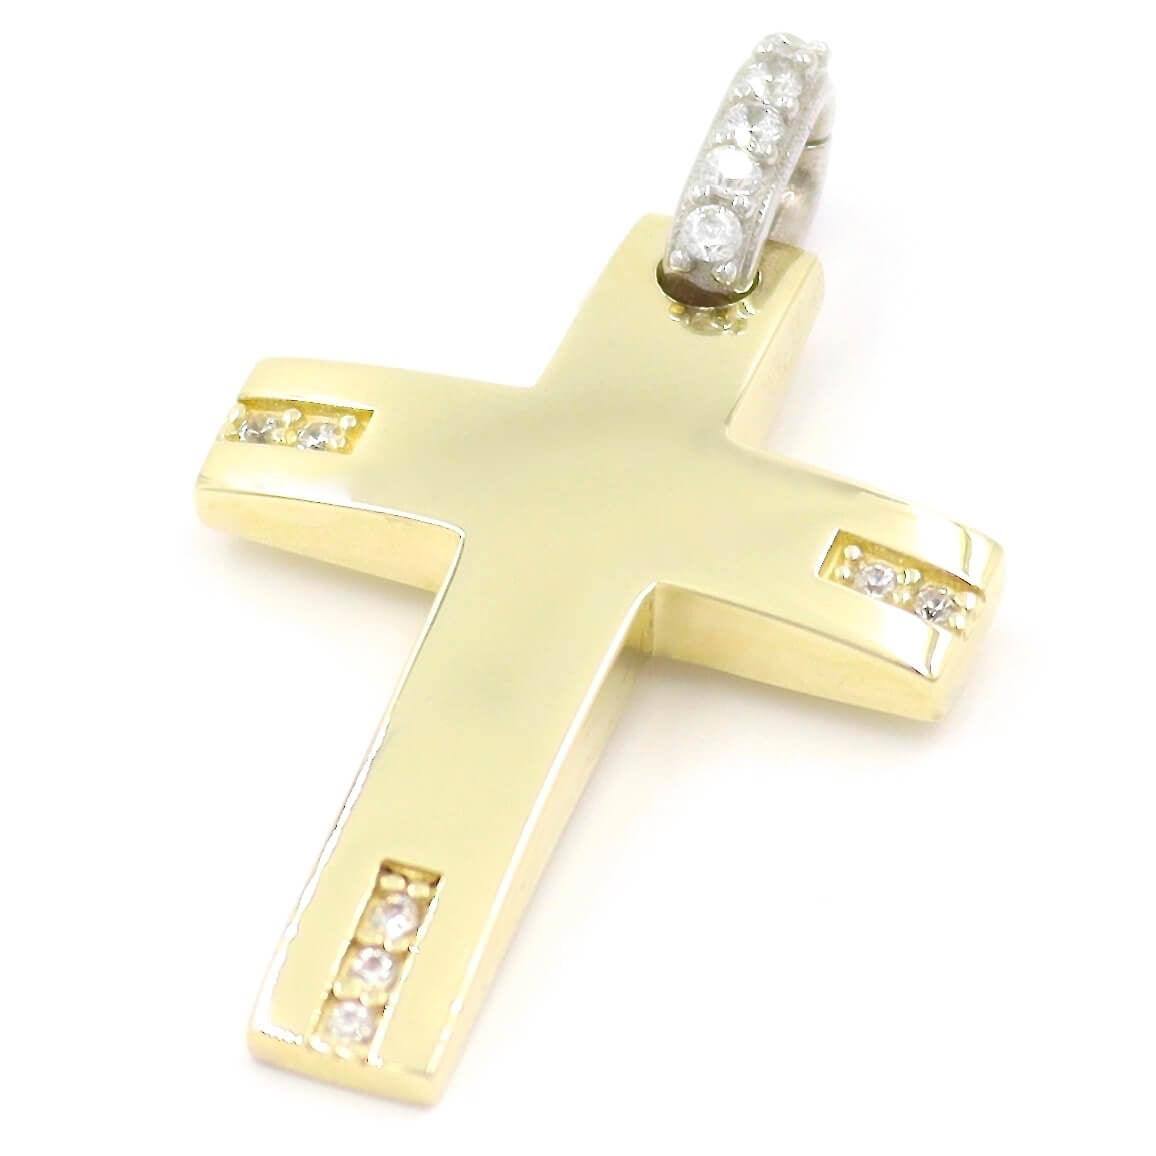 Χρυσός σταυρός σε διχρωμία με λευκές πέτρες ζιργκόν, σεταρισμένος με αλυσίδα 45 εκατοστών